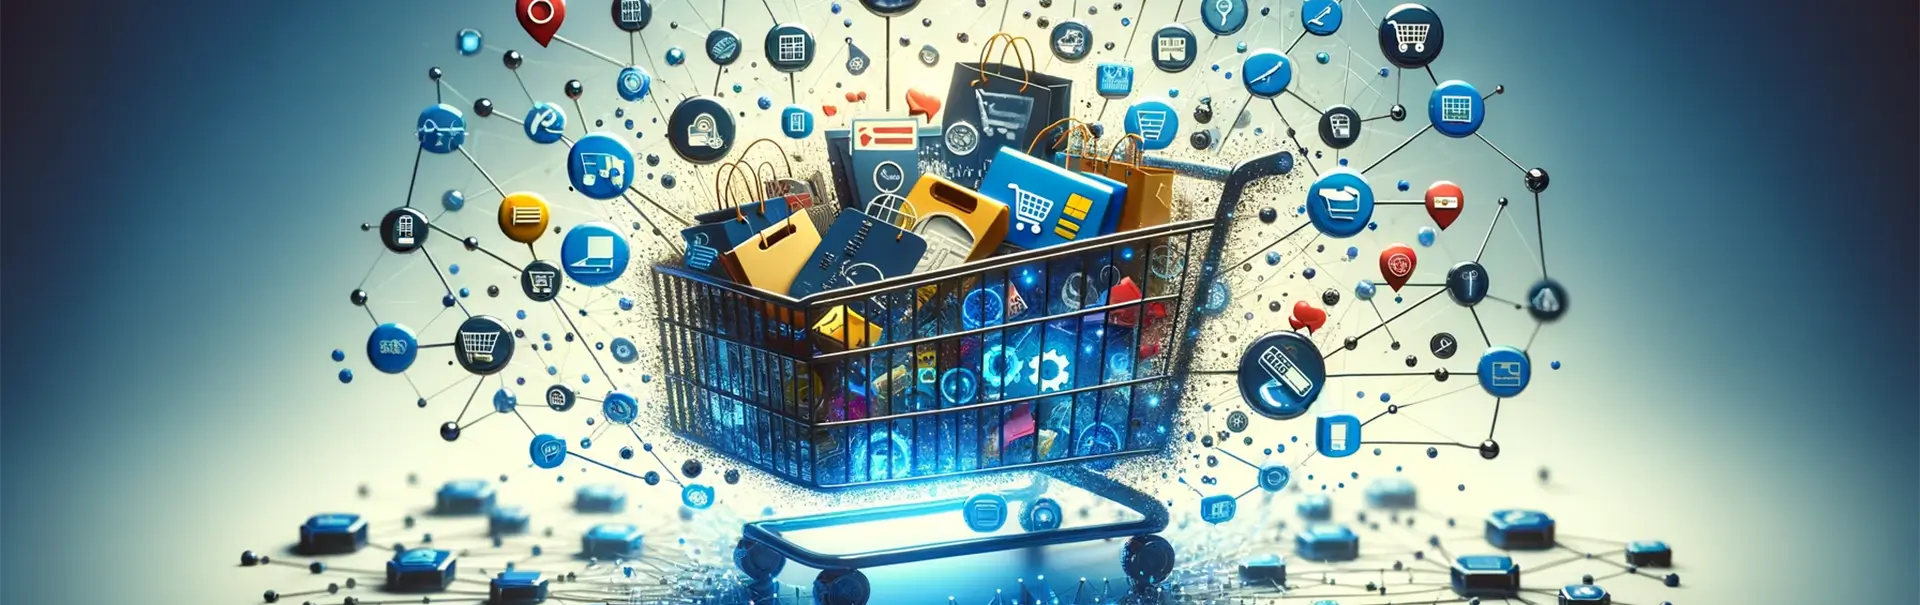 Łączenie e-commerce i aplikacji mobilnych dla wzrostu sprzedaży